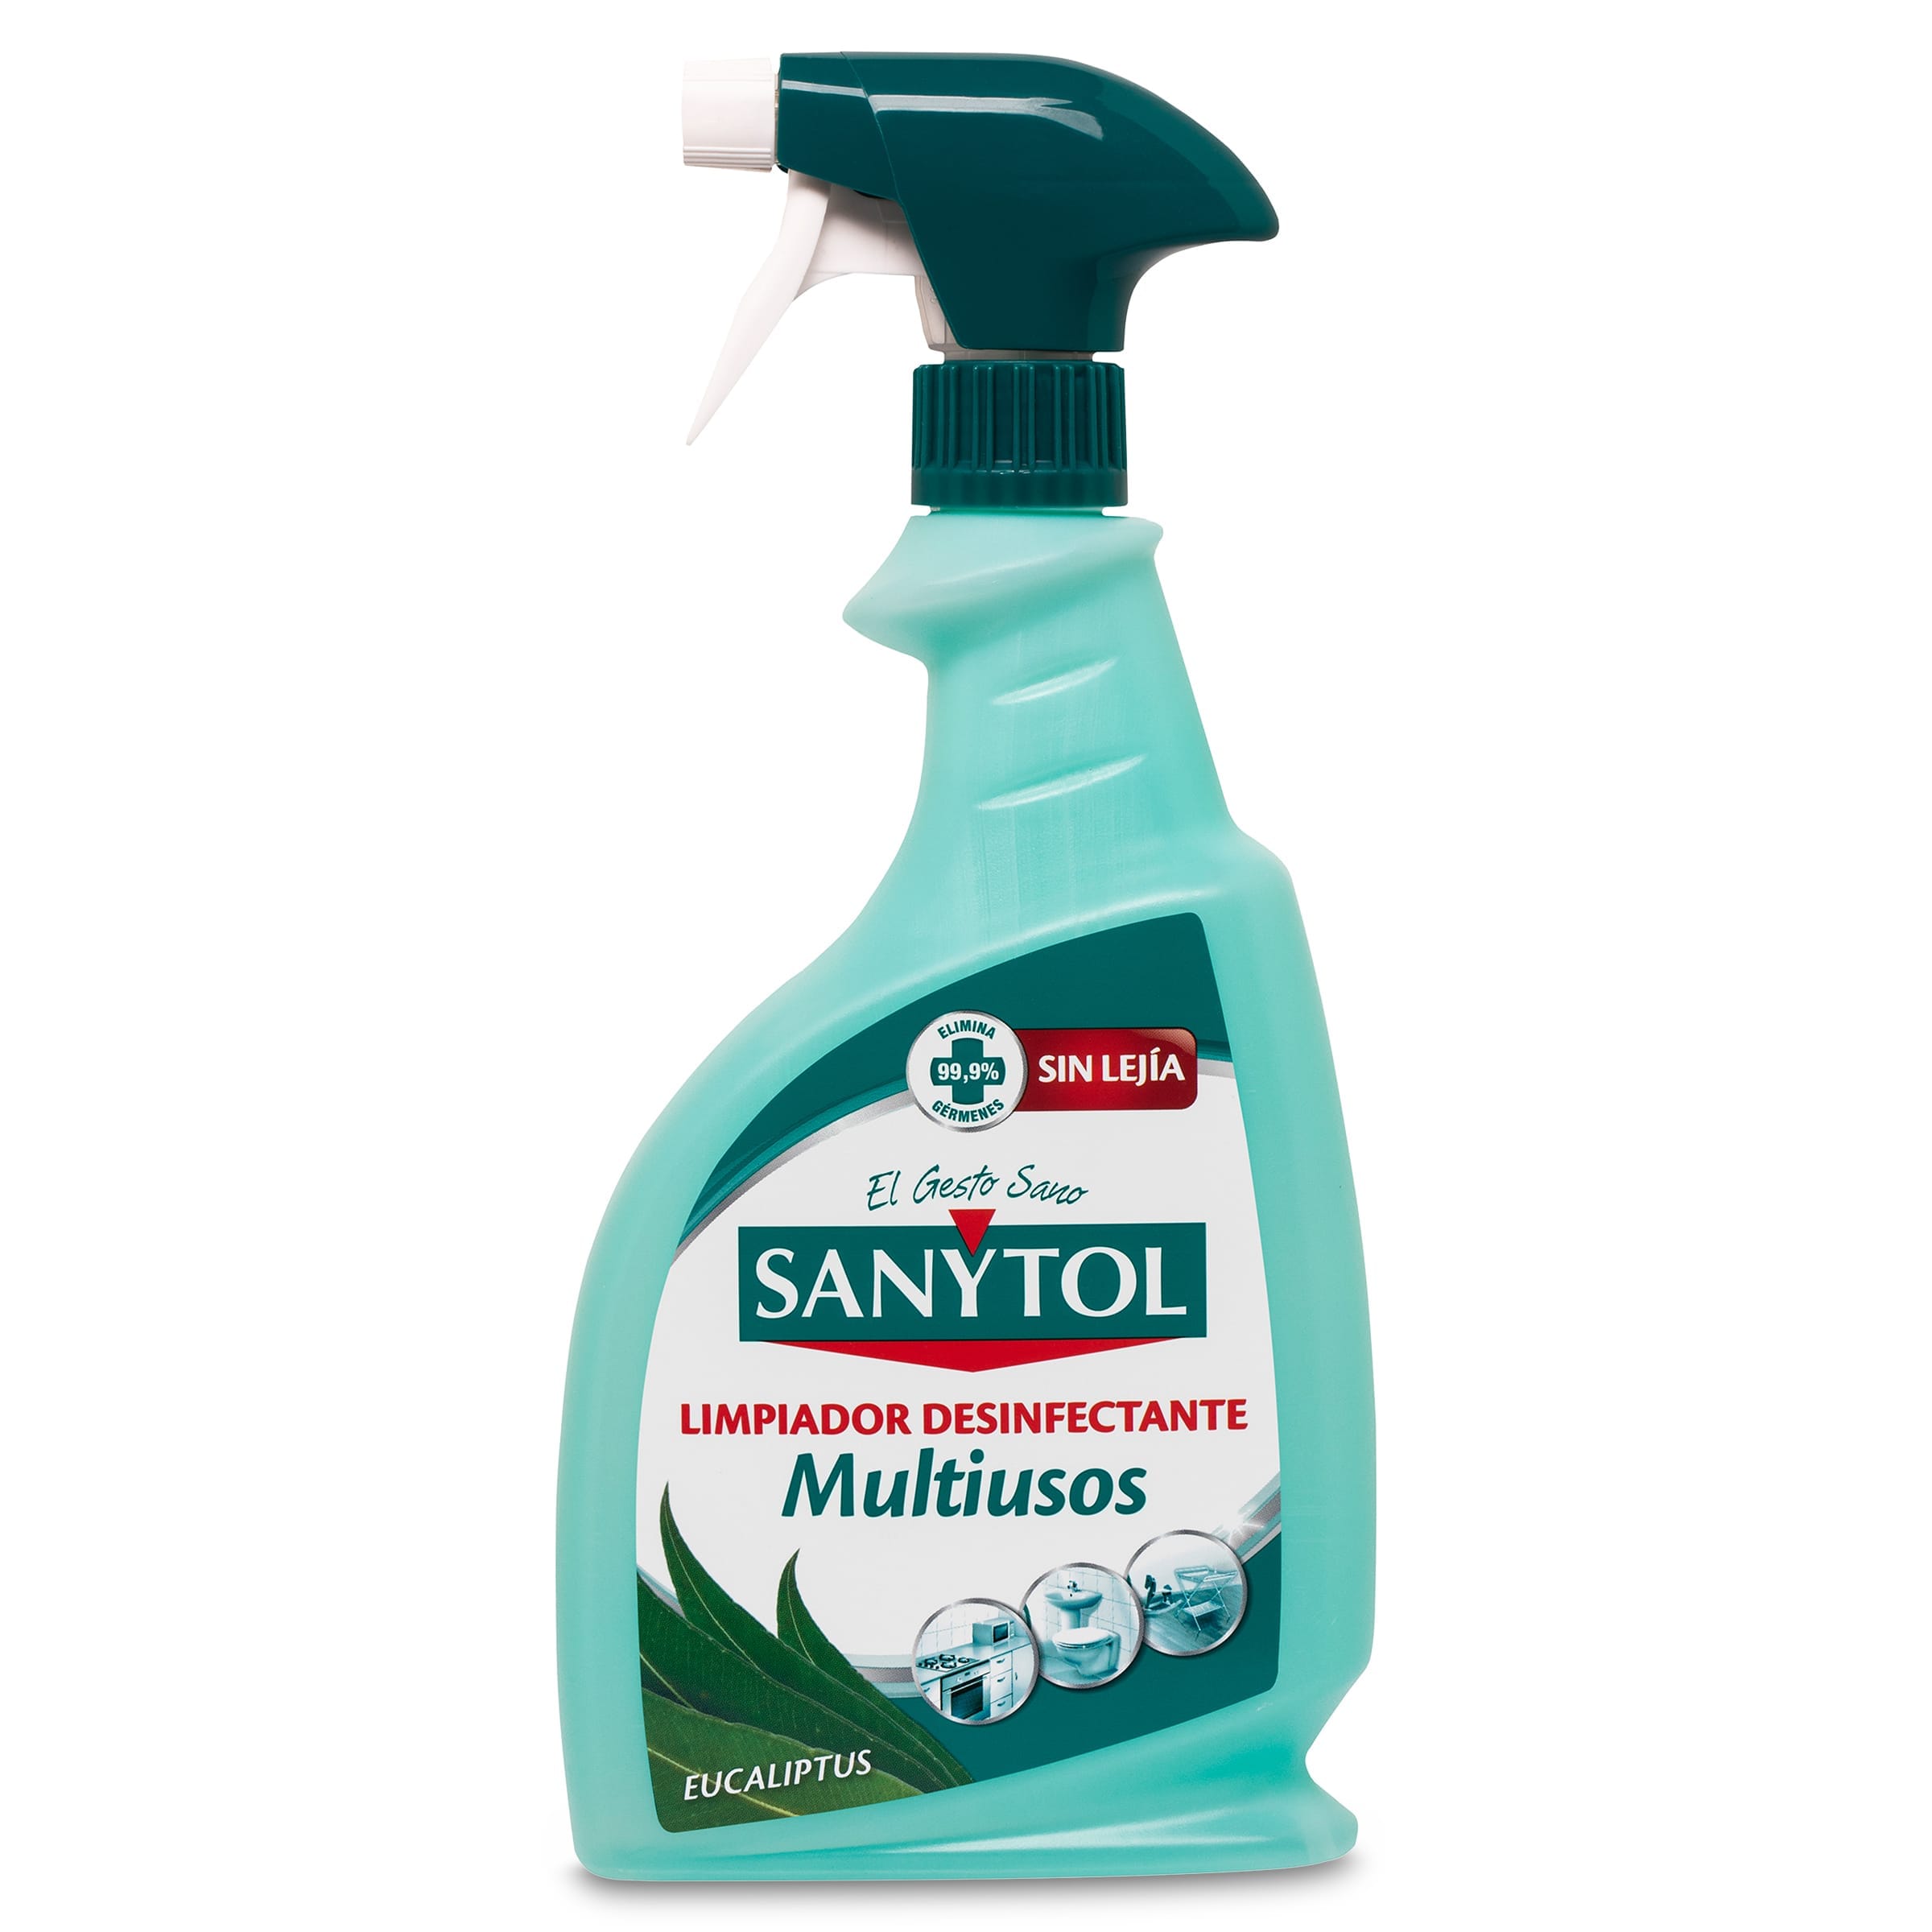 Limpiador desinfectante multiusos Sanytol spray 750 ml - Supermercados DIA